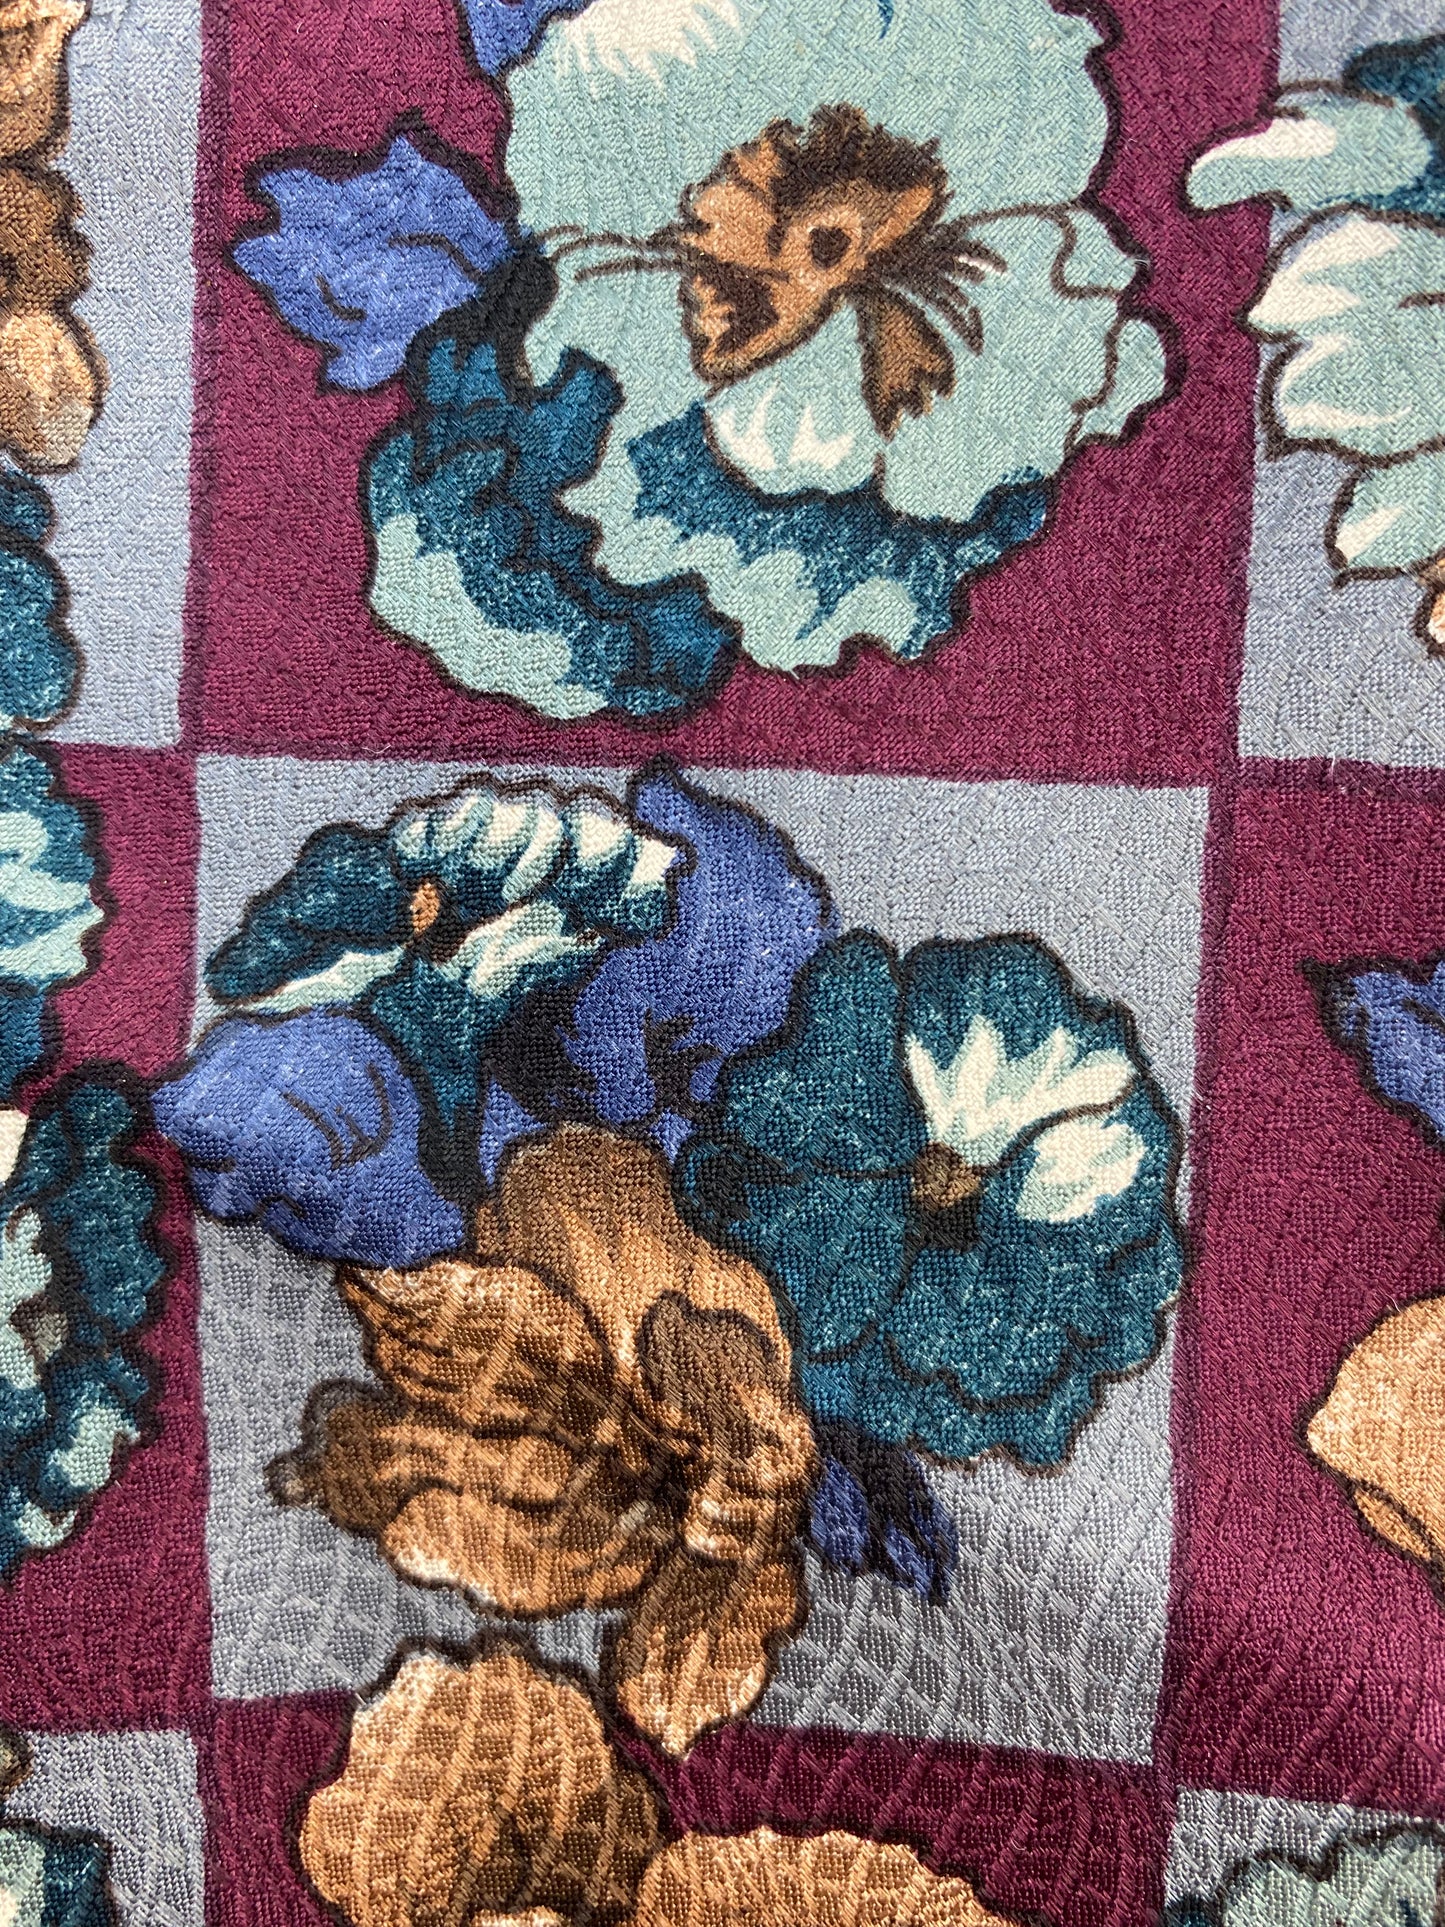 90s Deadstock Silk Necktie, Vintage Plum/ Blue Floral Pattern Tie, NOS